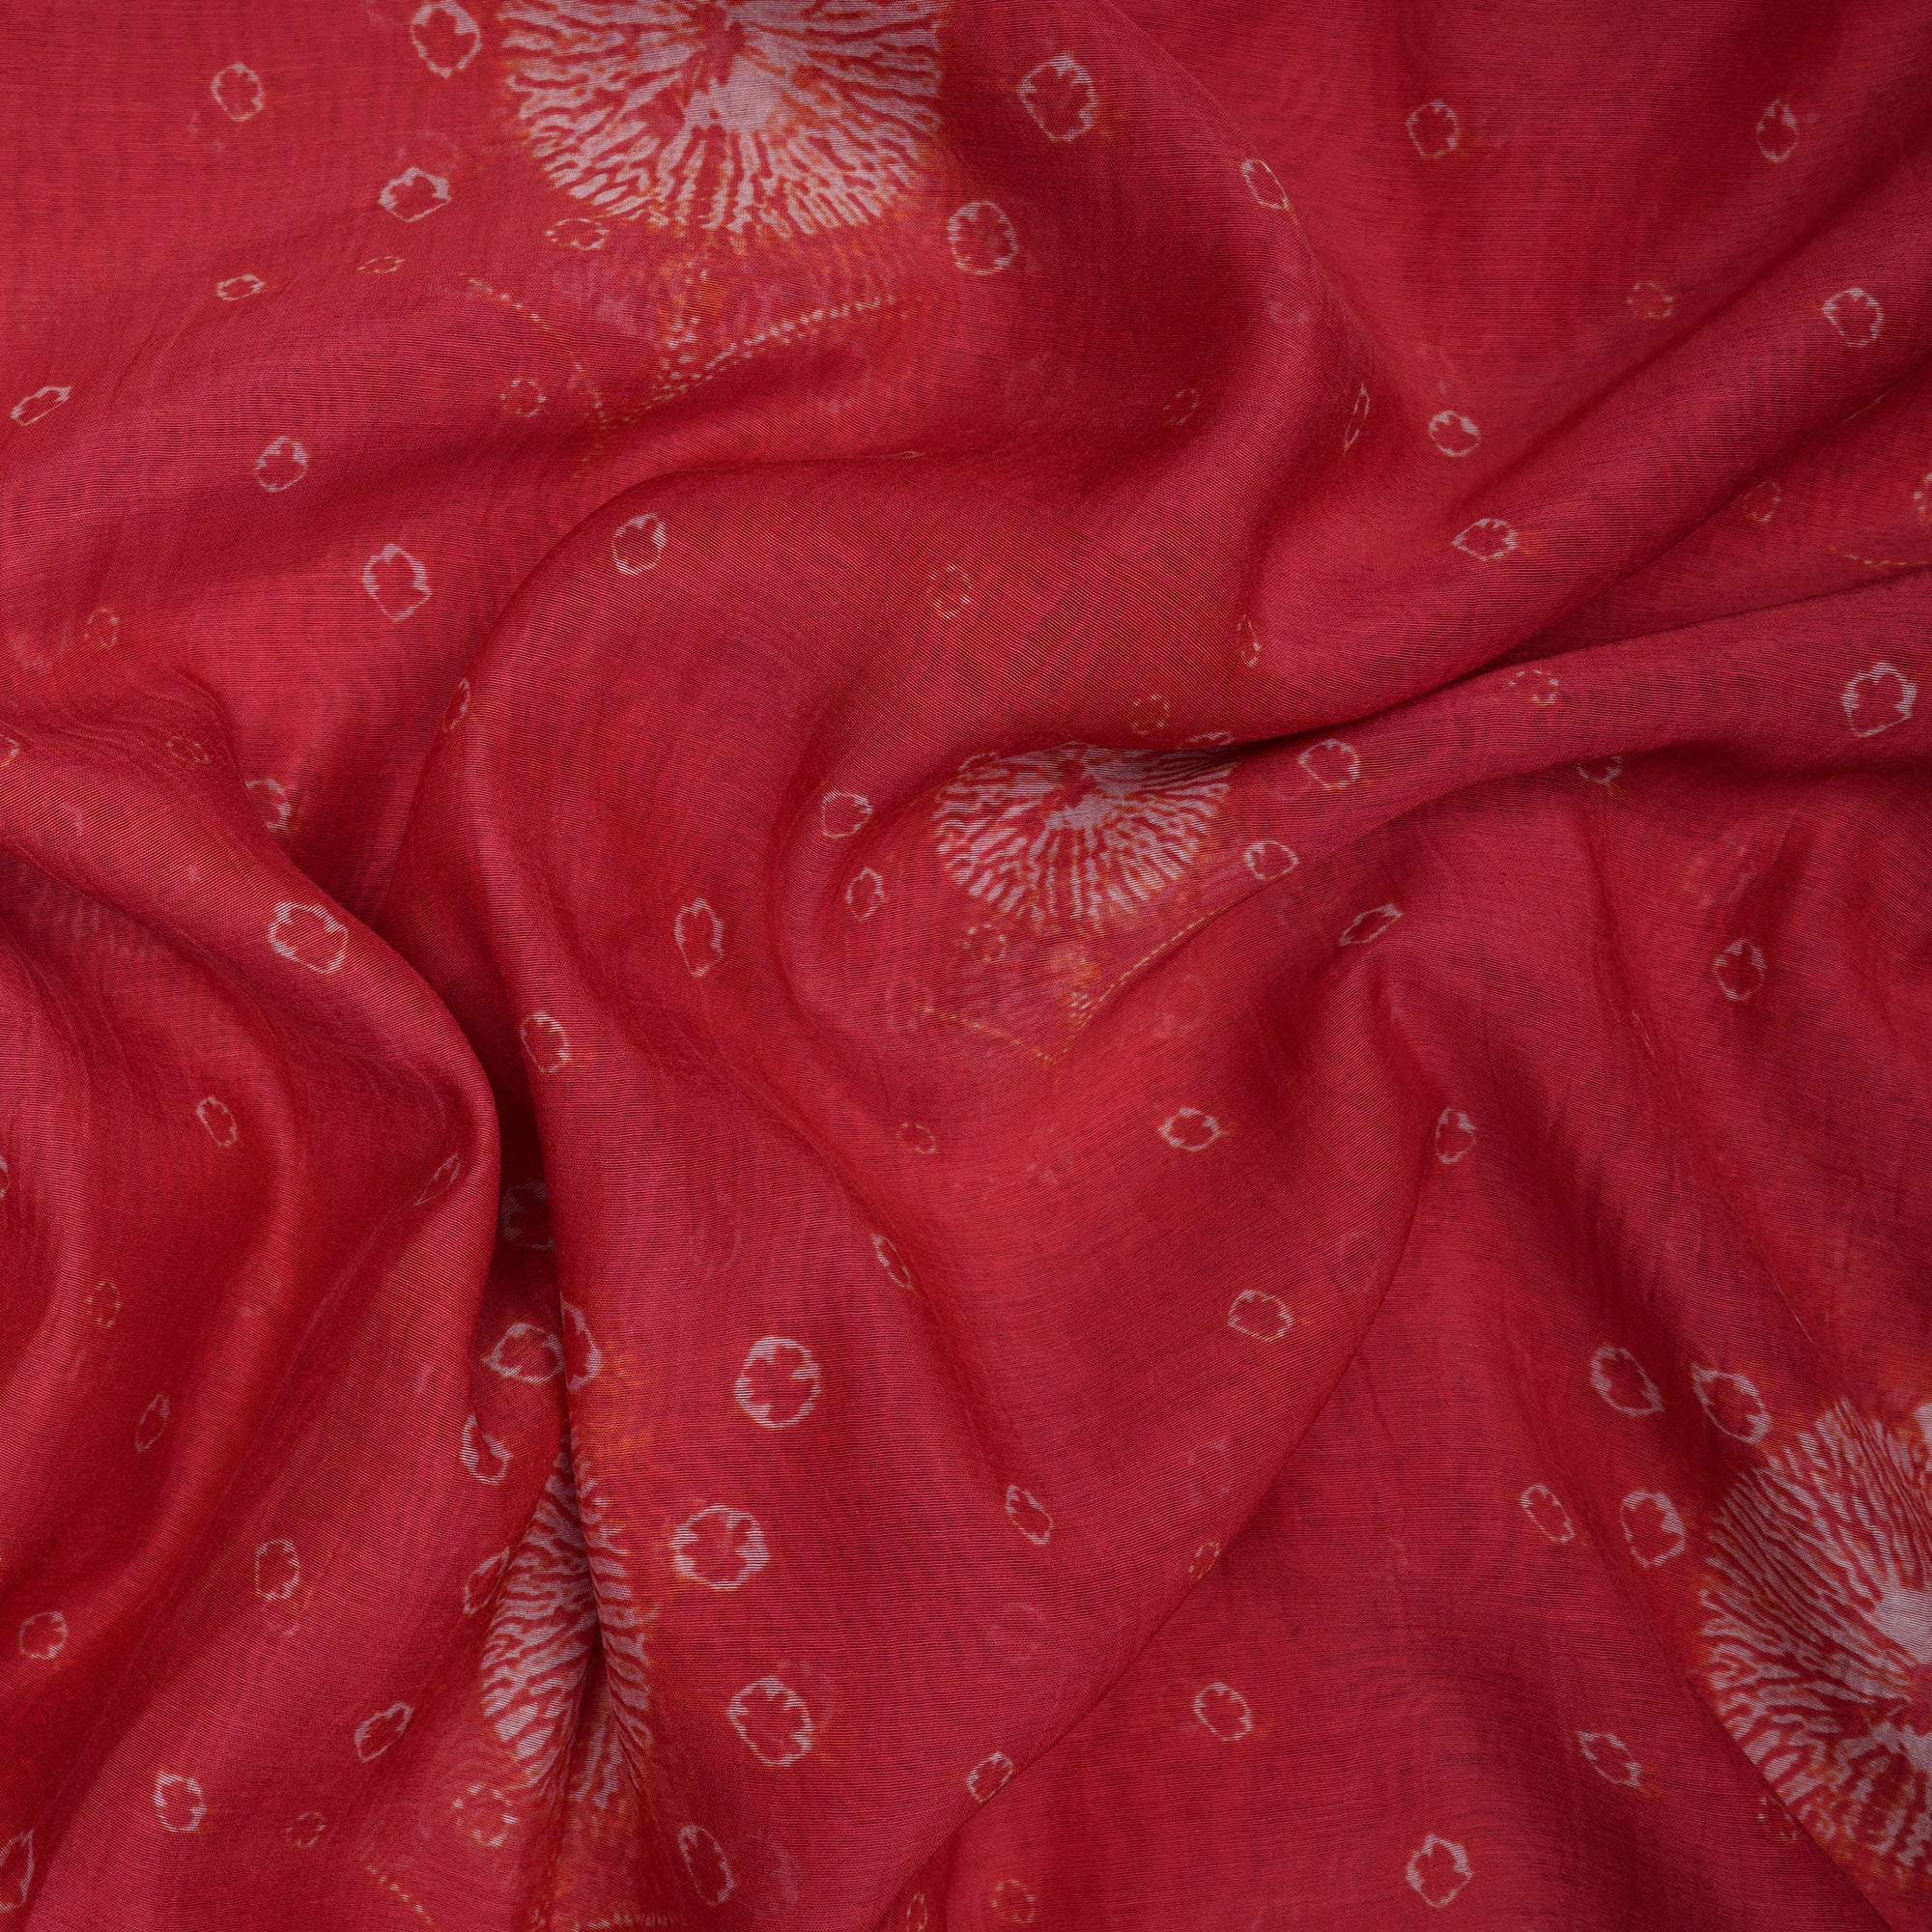 Rani Pink Floral Pattern Digital Print Fine Chanderi Fabric